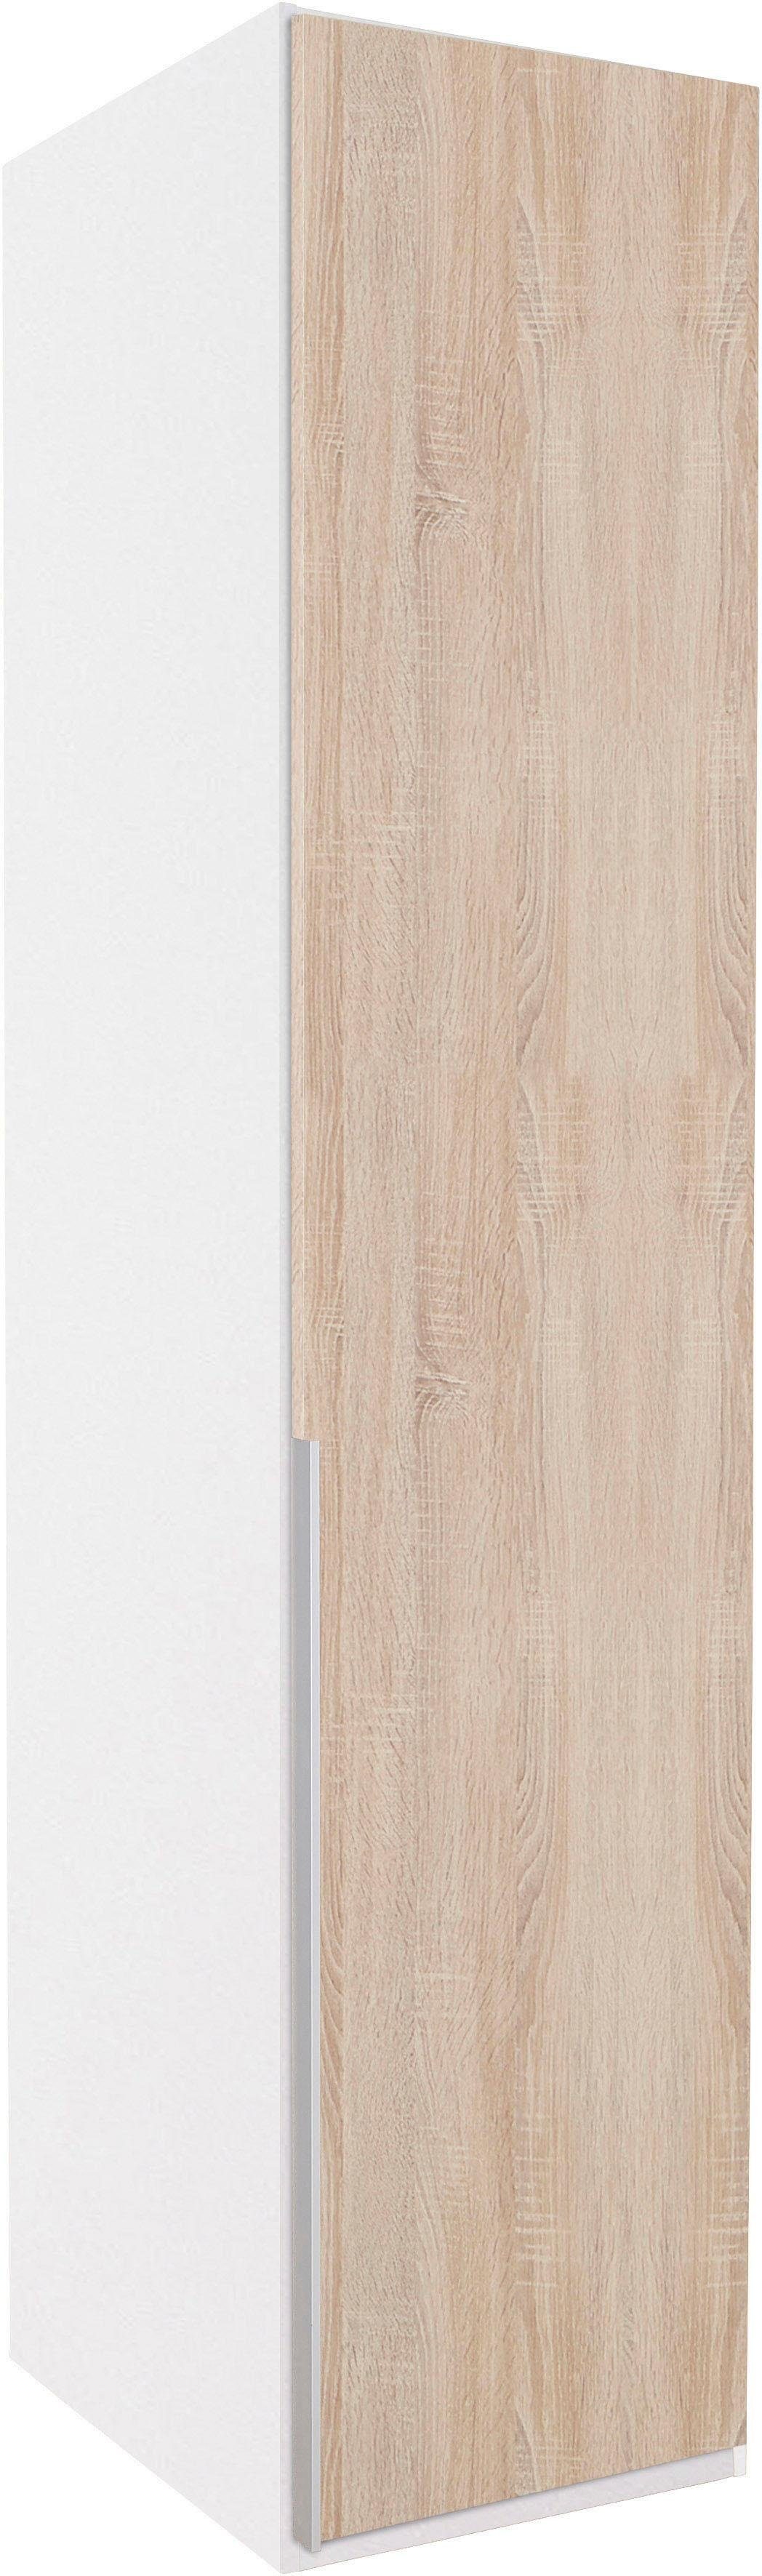 Wimex Kleiderschrank New 236cm in weiß/Front York Breiten, 208 vielen hoch oder struktureichefarben hell